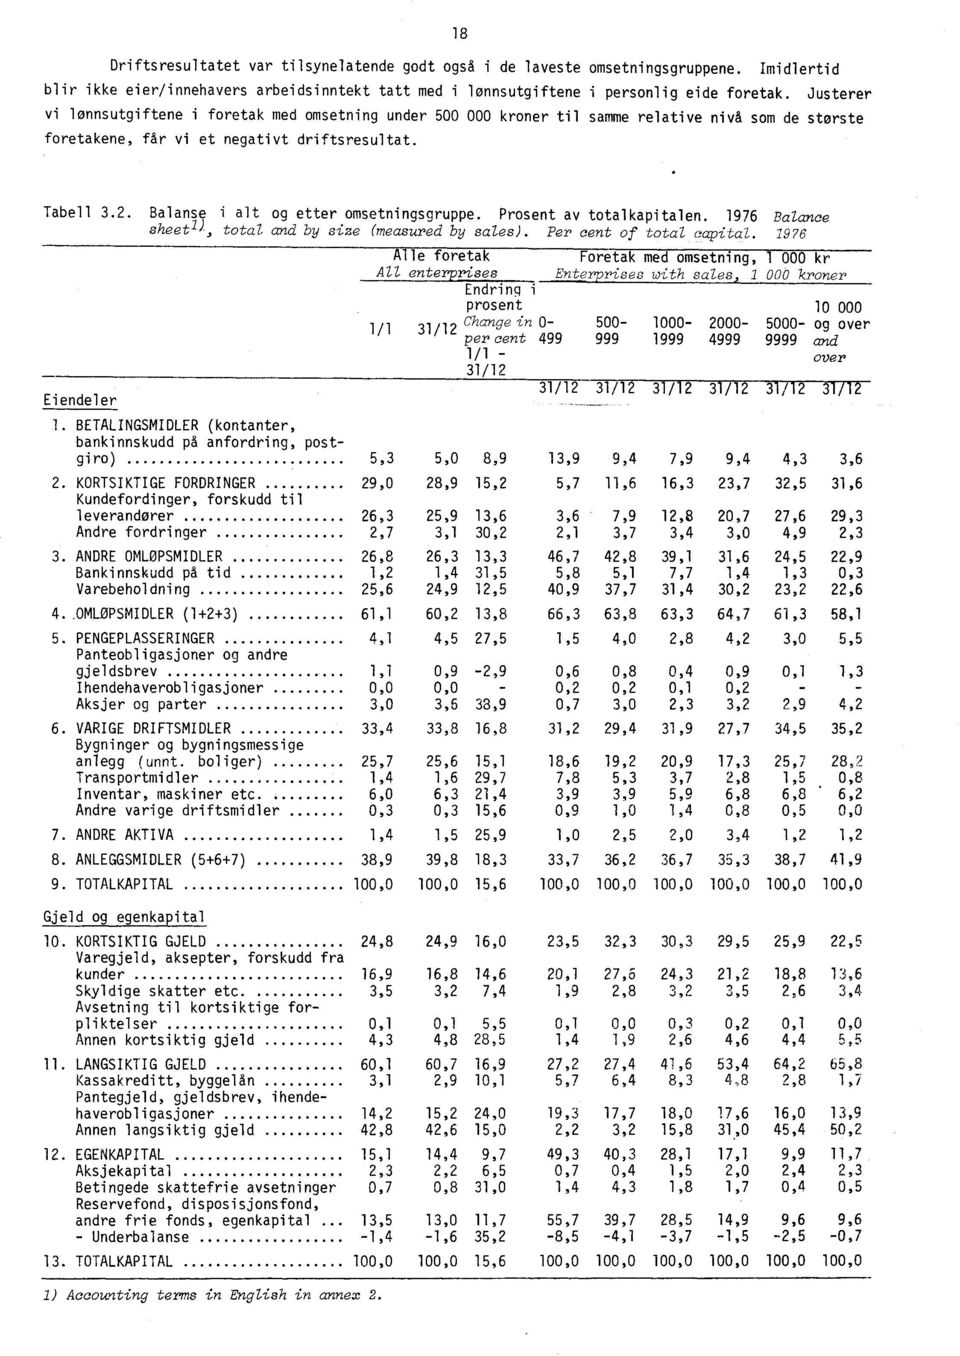 Balanse i alt og etter omsetningsgruppe. Prosent av totalkapitalen. 1976 Balance sheetl), total and by size (measured by sales). Per cent of total capital.